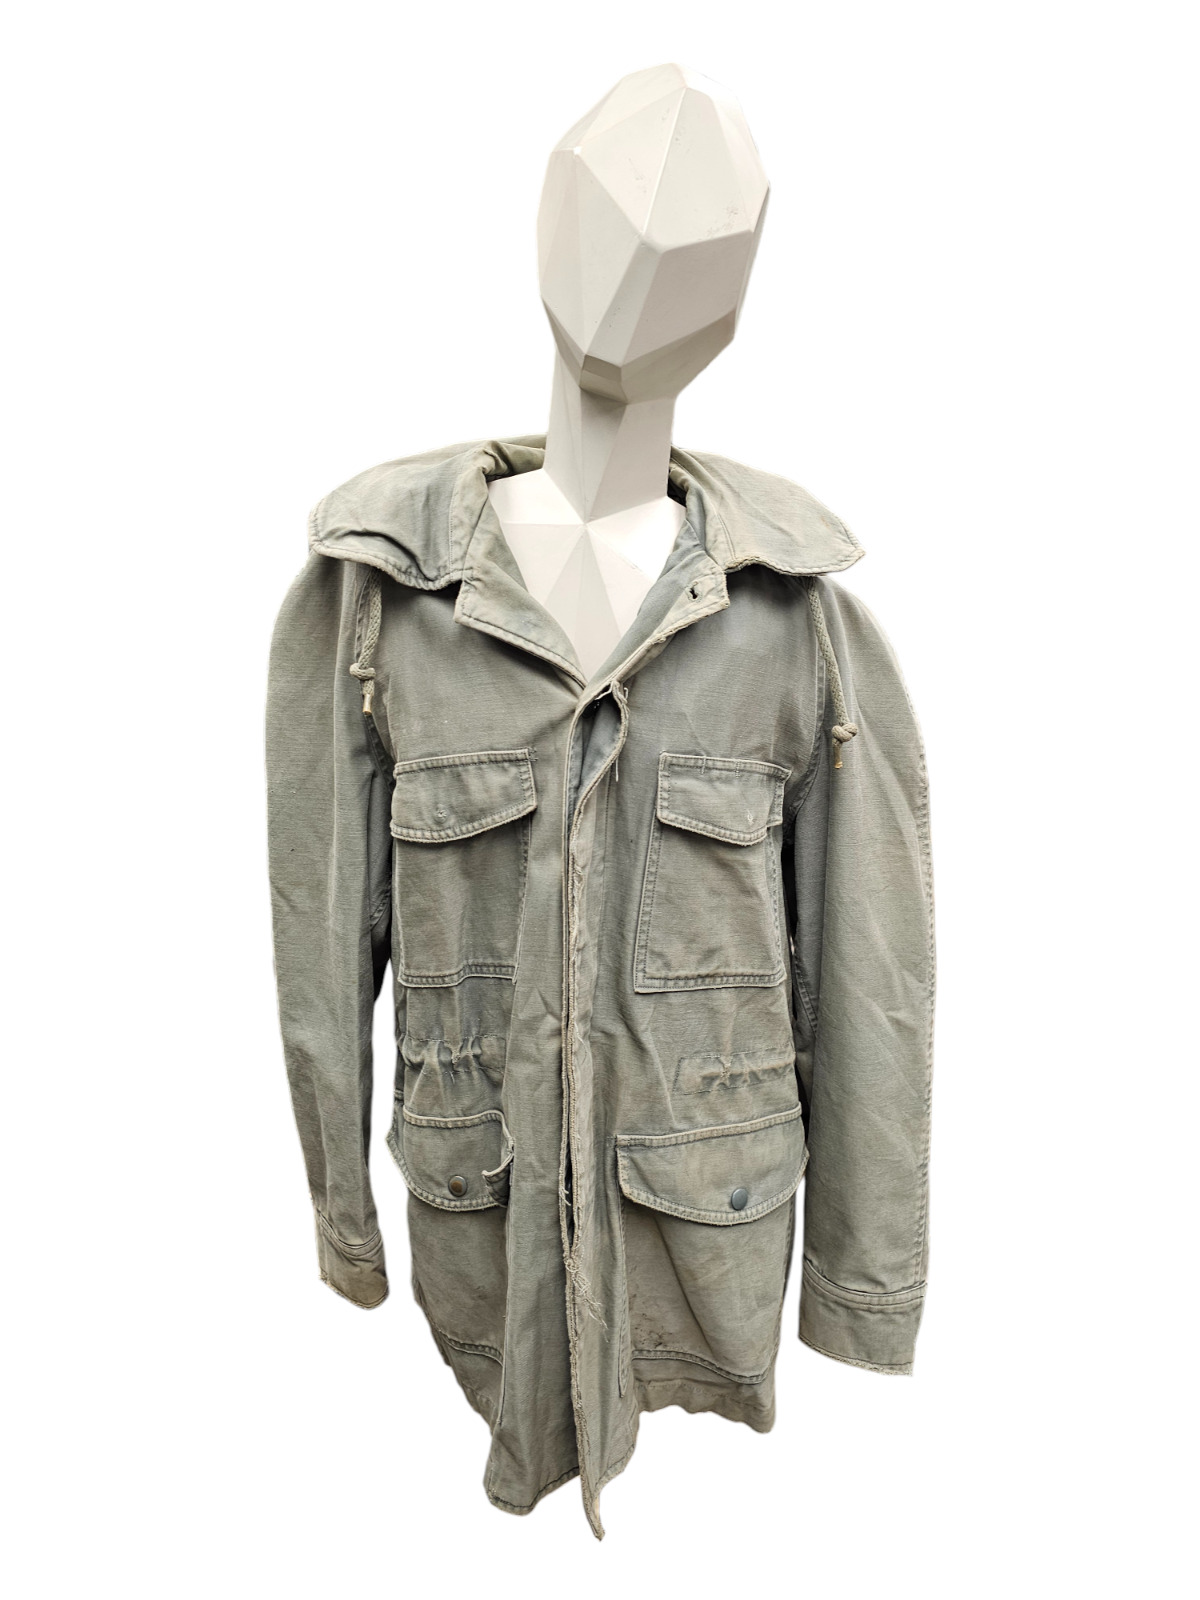 Vintage U.S. Armed Forces Air Force Sateen Jacket